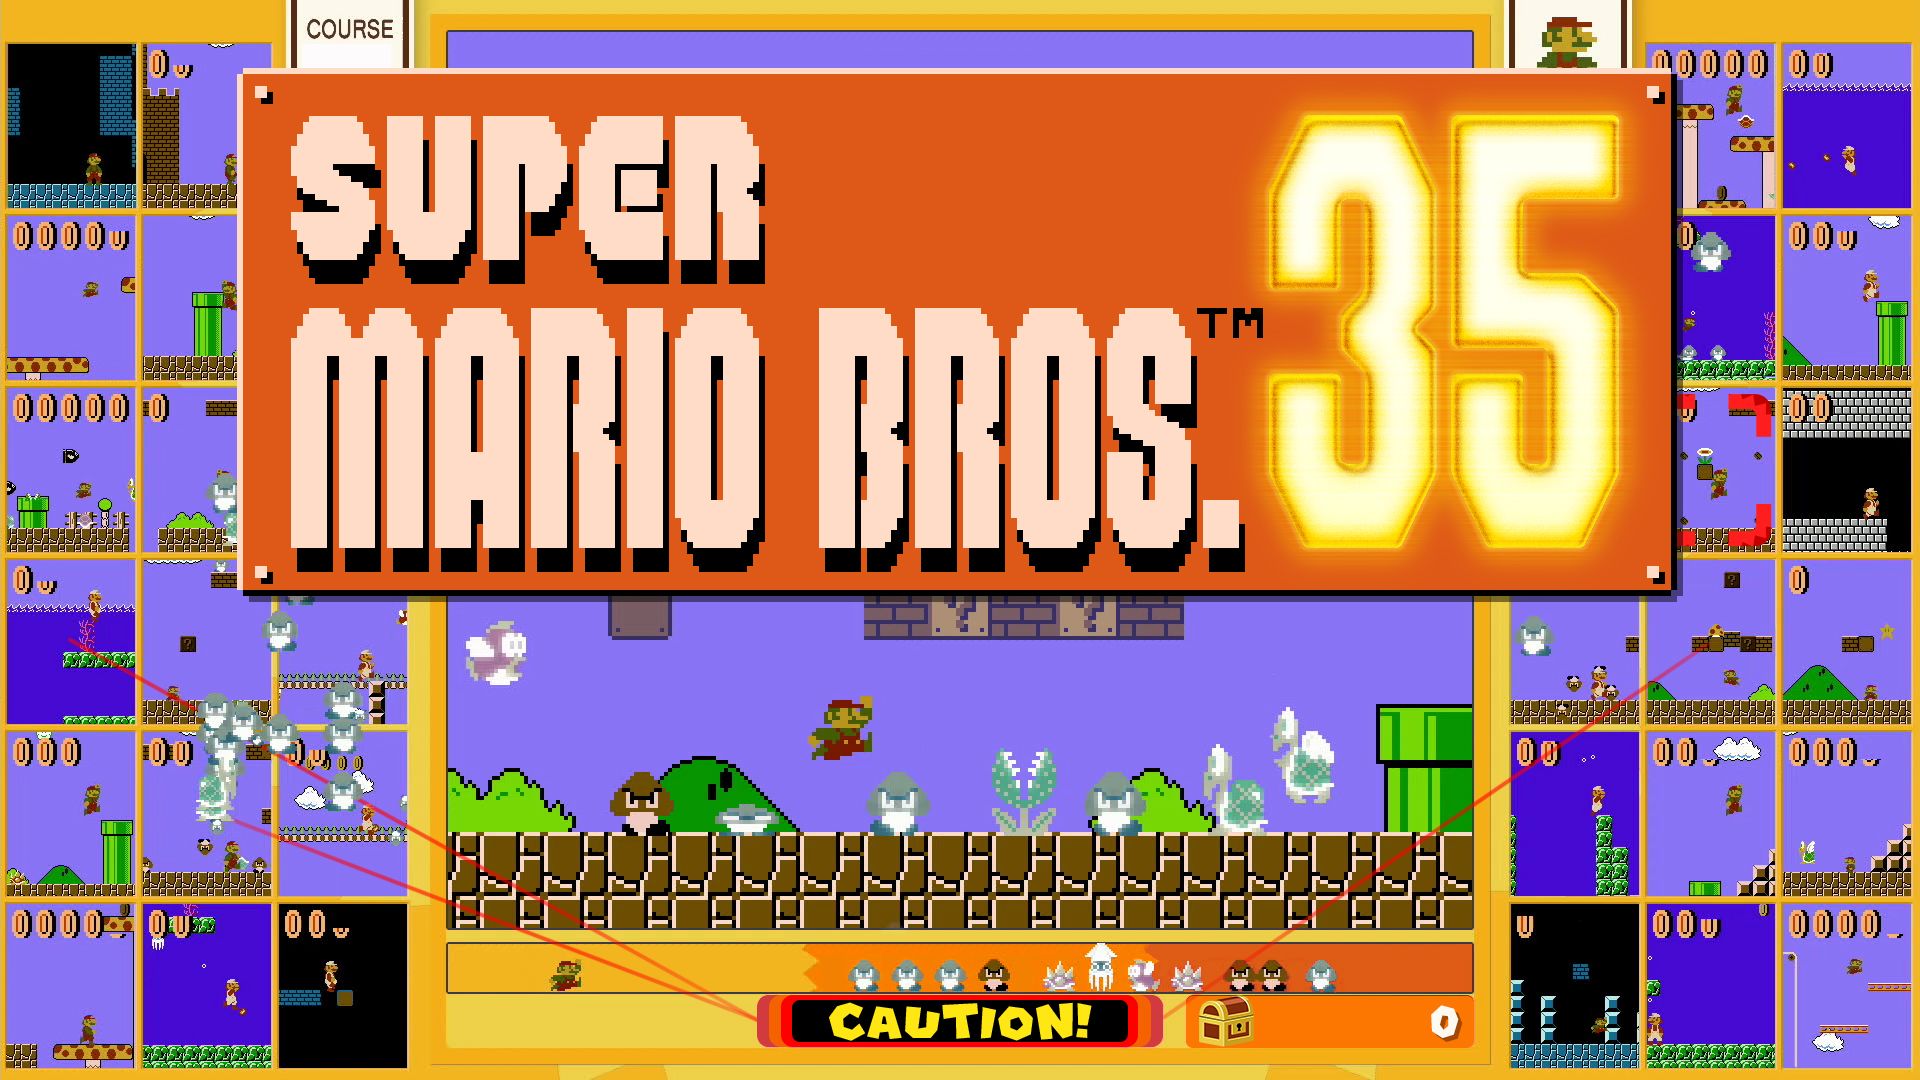 Super Mario Bros 35. pulled